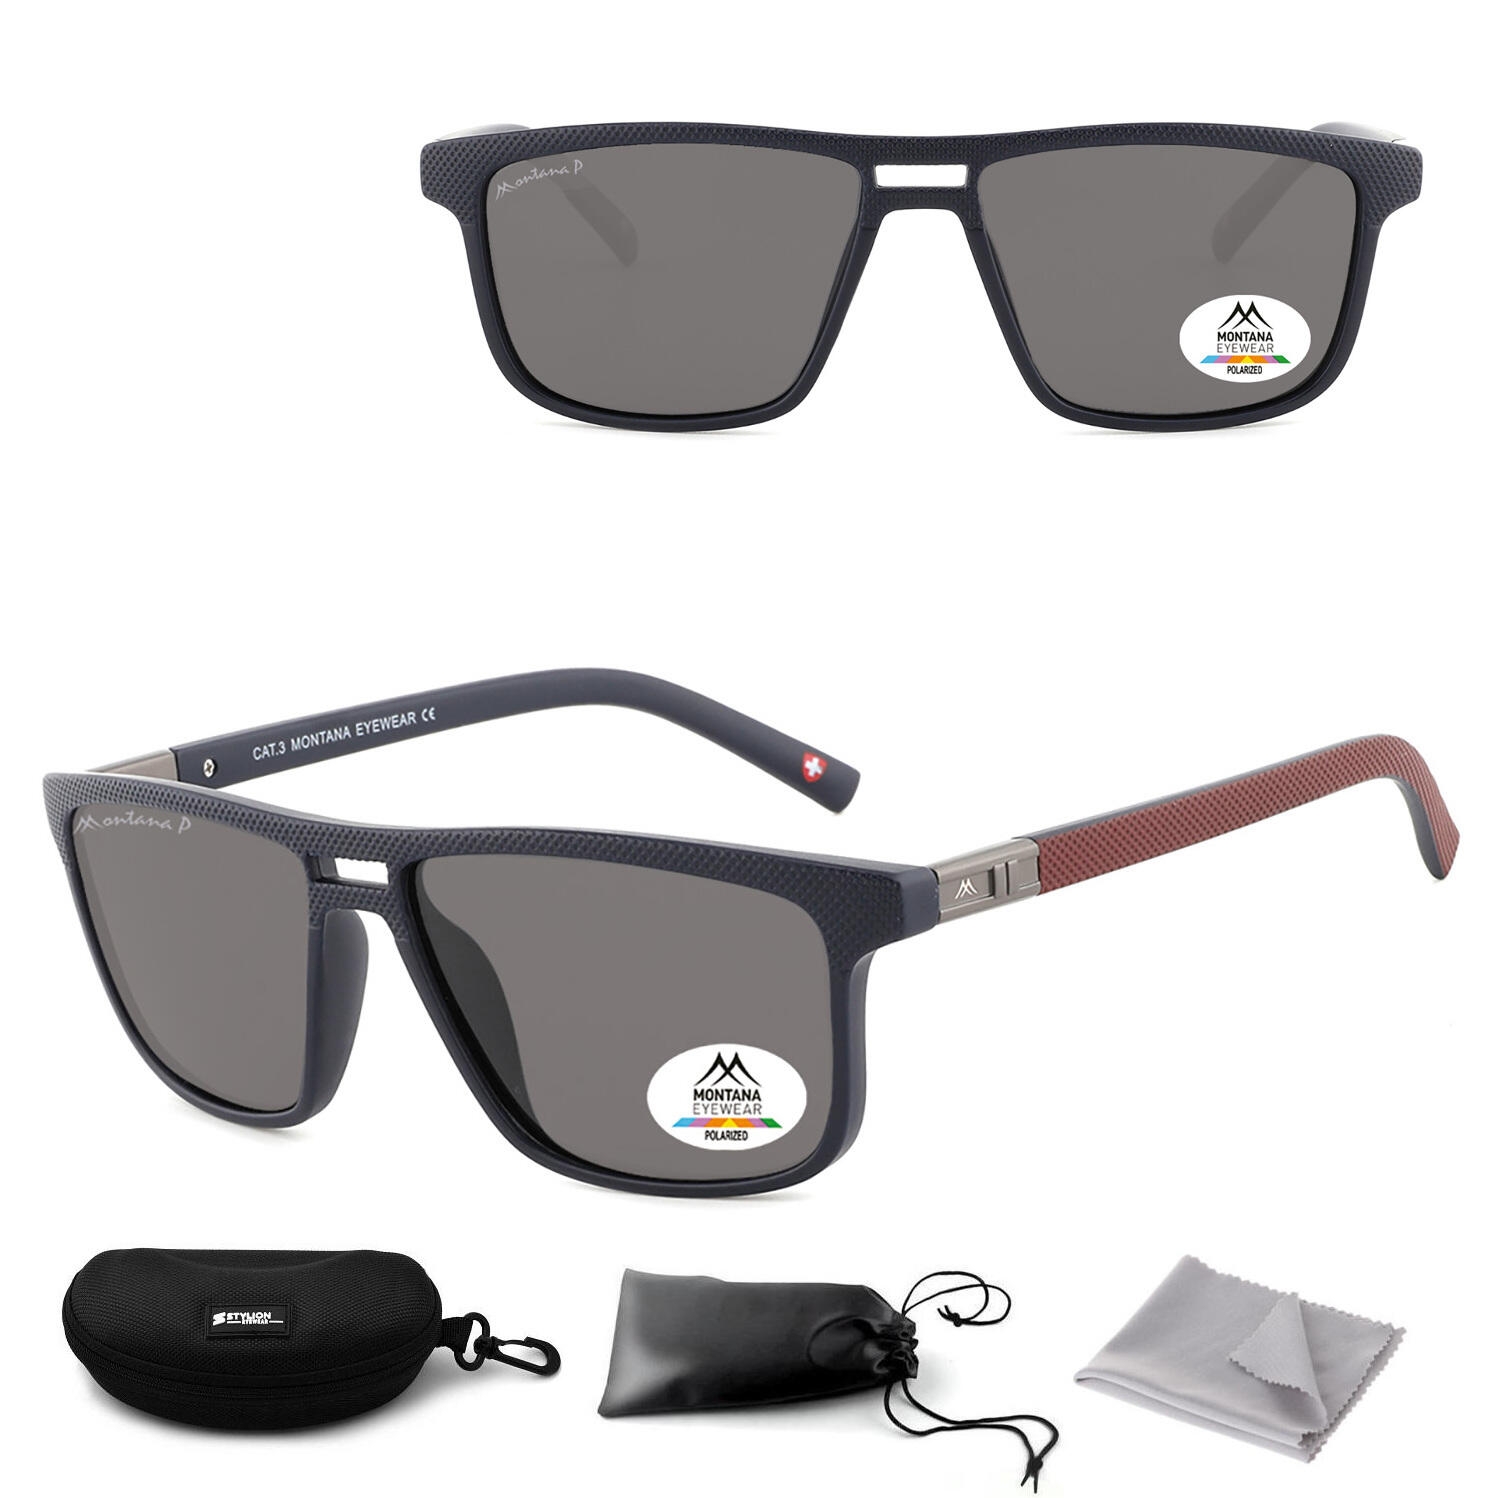 Granatowe prostokątne okulary przeciwsłoneczne z polaryzacją MP3A